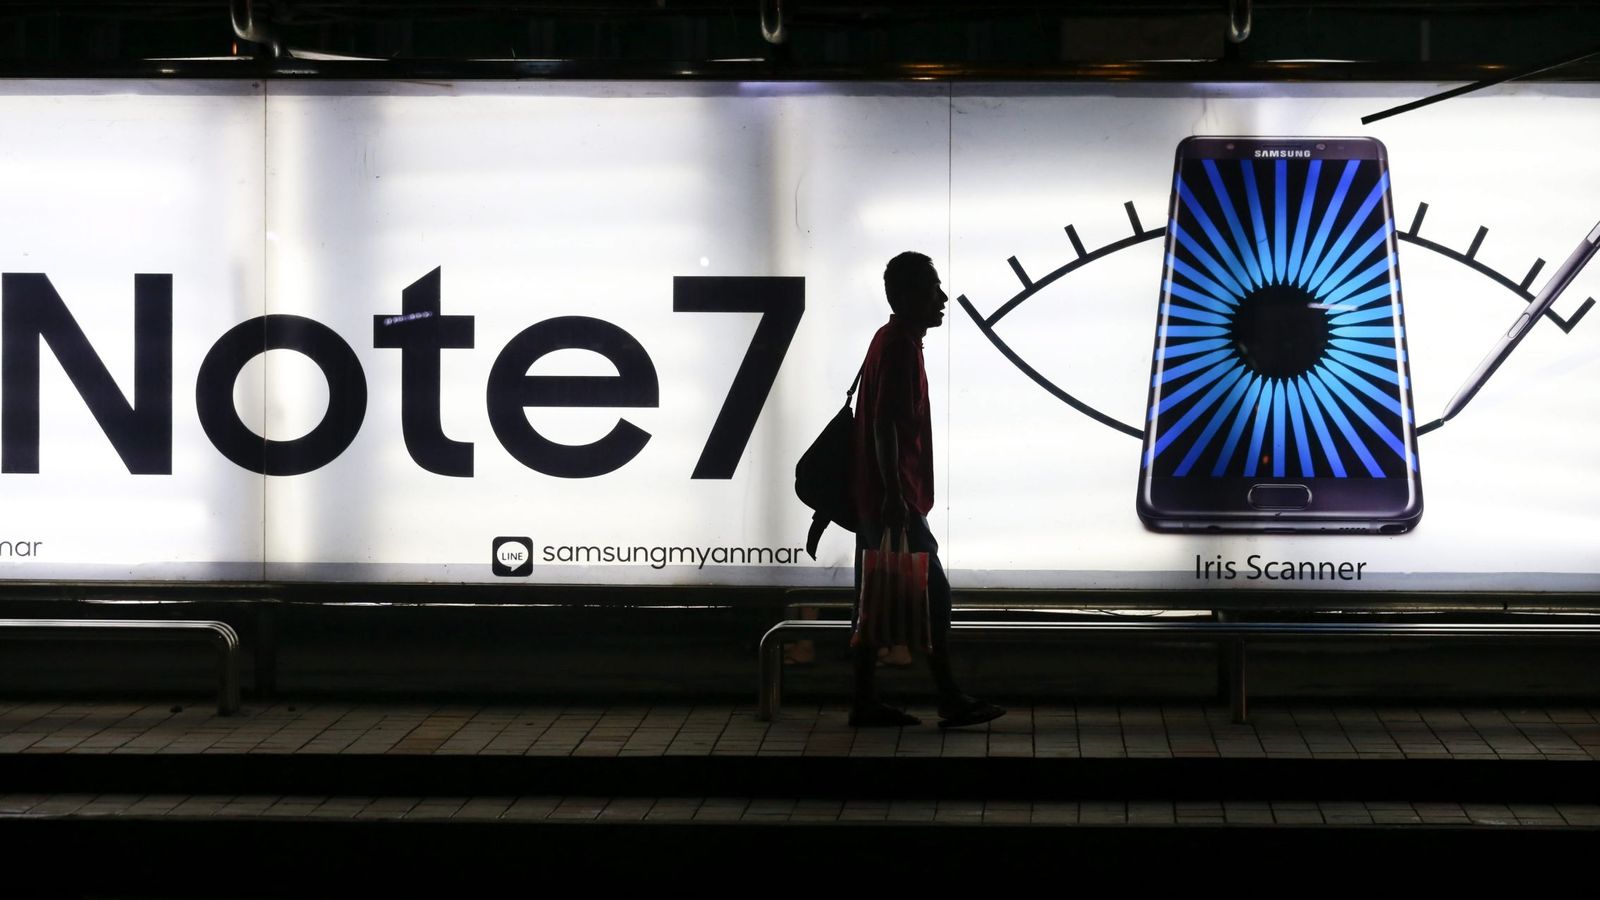 Foto: Un hombra camina junto a una parada de autobús en la que aparece una publicidad del Galaxy Note 7 de Samsung. (Efe)